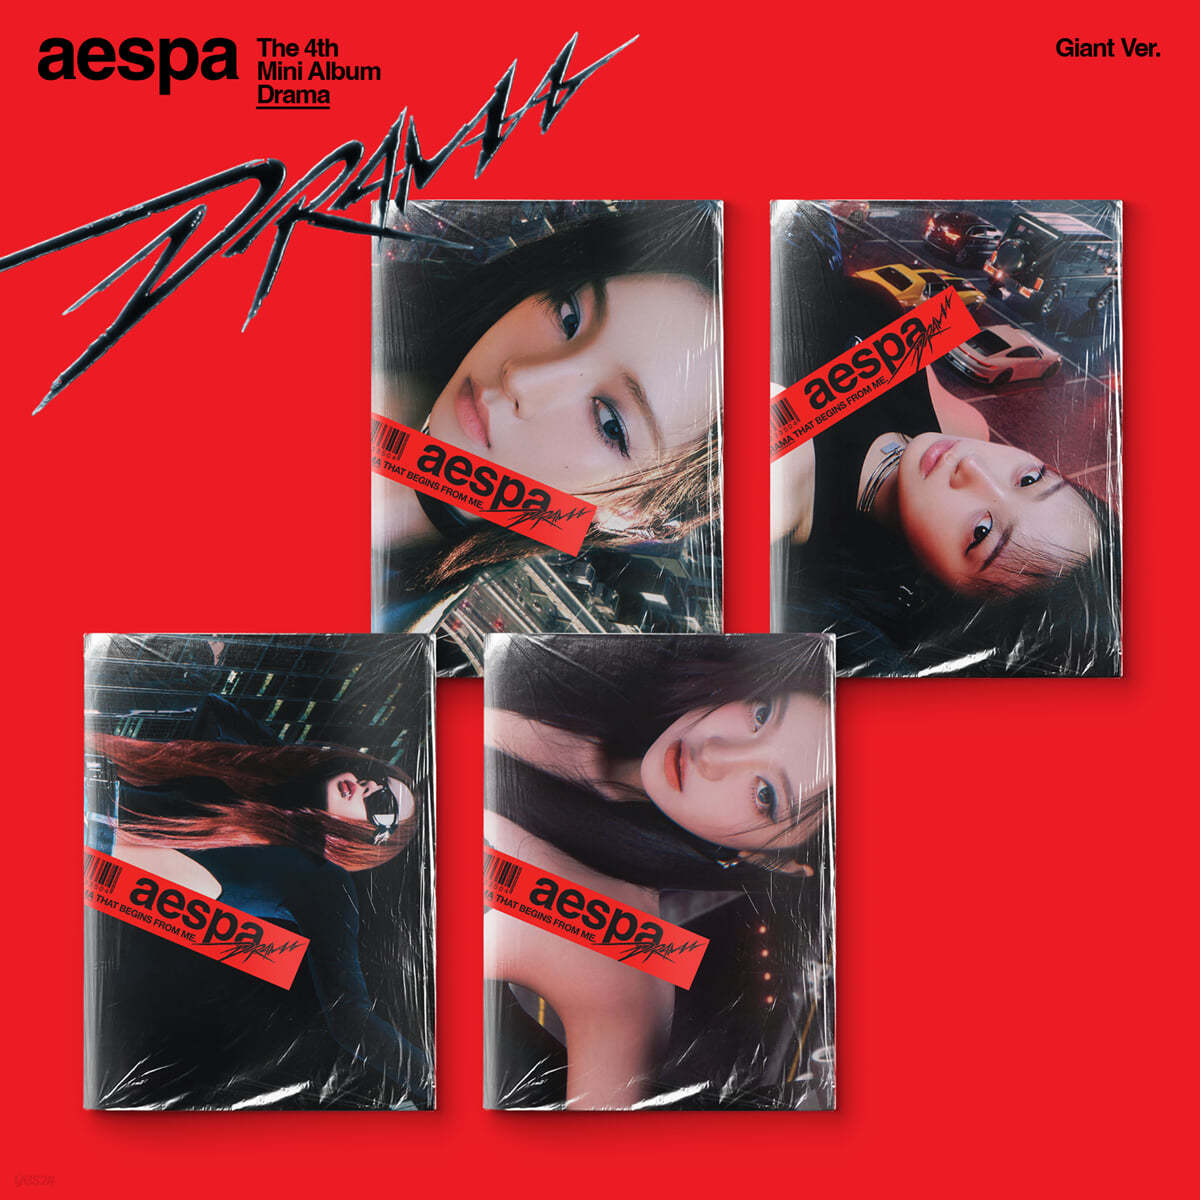 에스파 (aespa) - 미니앨범 4집 : Drama [Giant ver.][4종 SET]